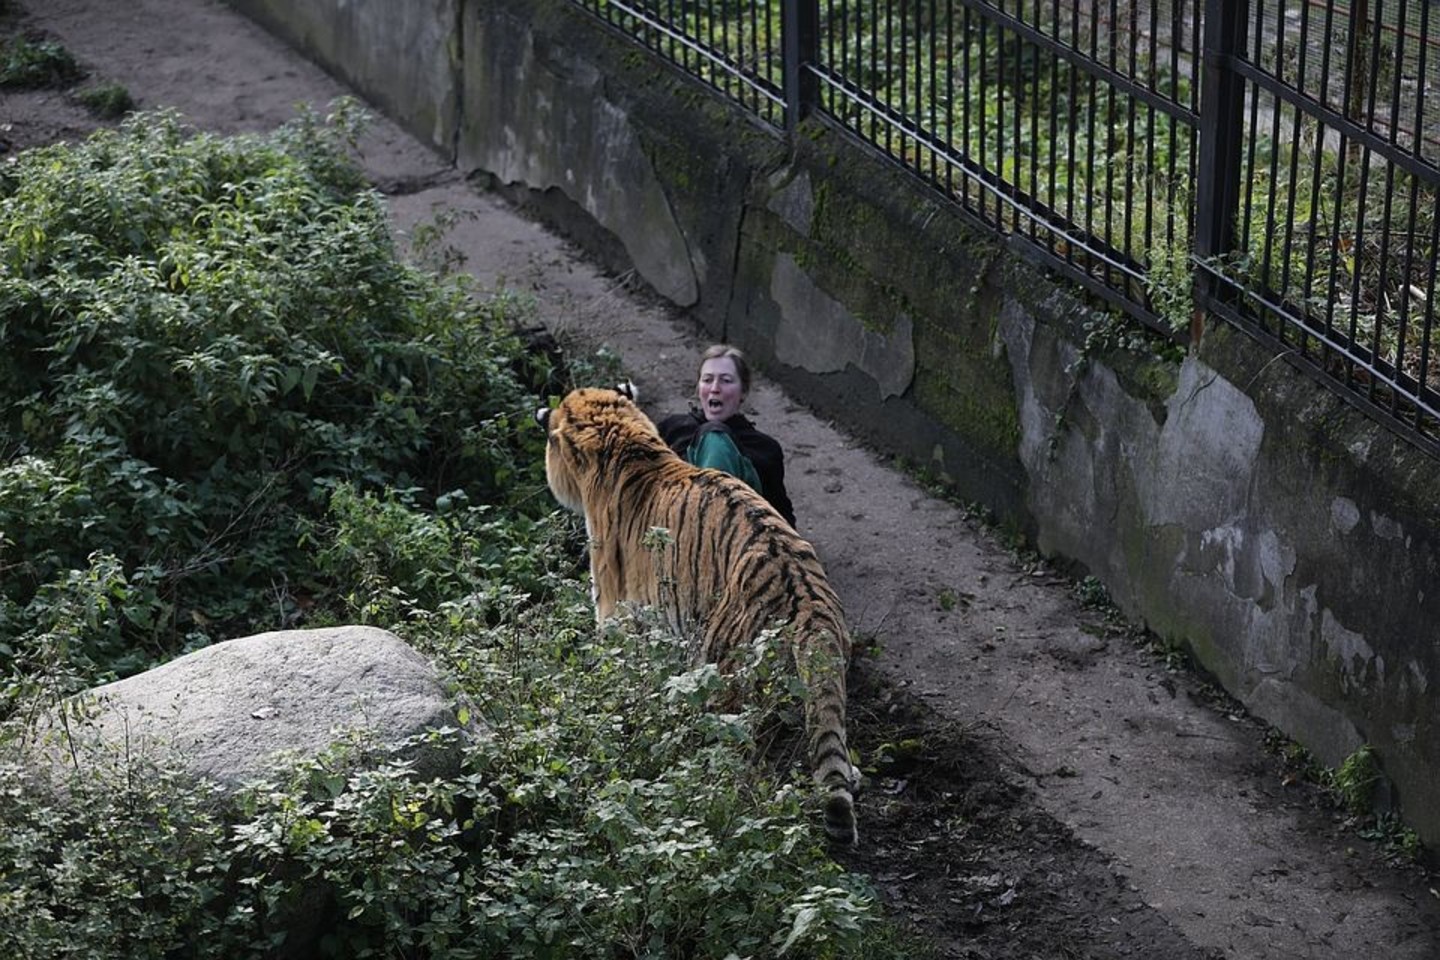  Tigro užpultai zoologijos sodo darbuotojai pavyko išsigelbėti tik lankytojų dėka. <br> vk.com nuotr. 